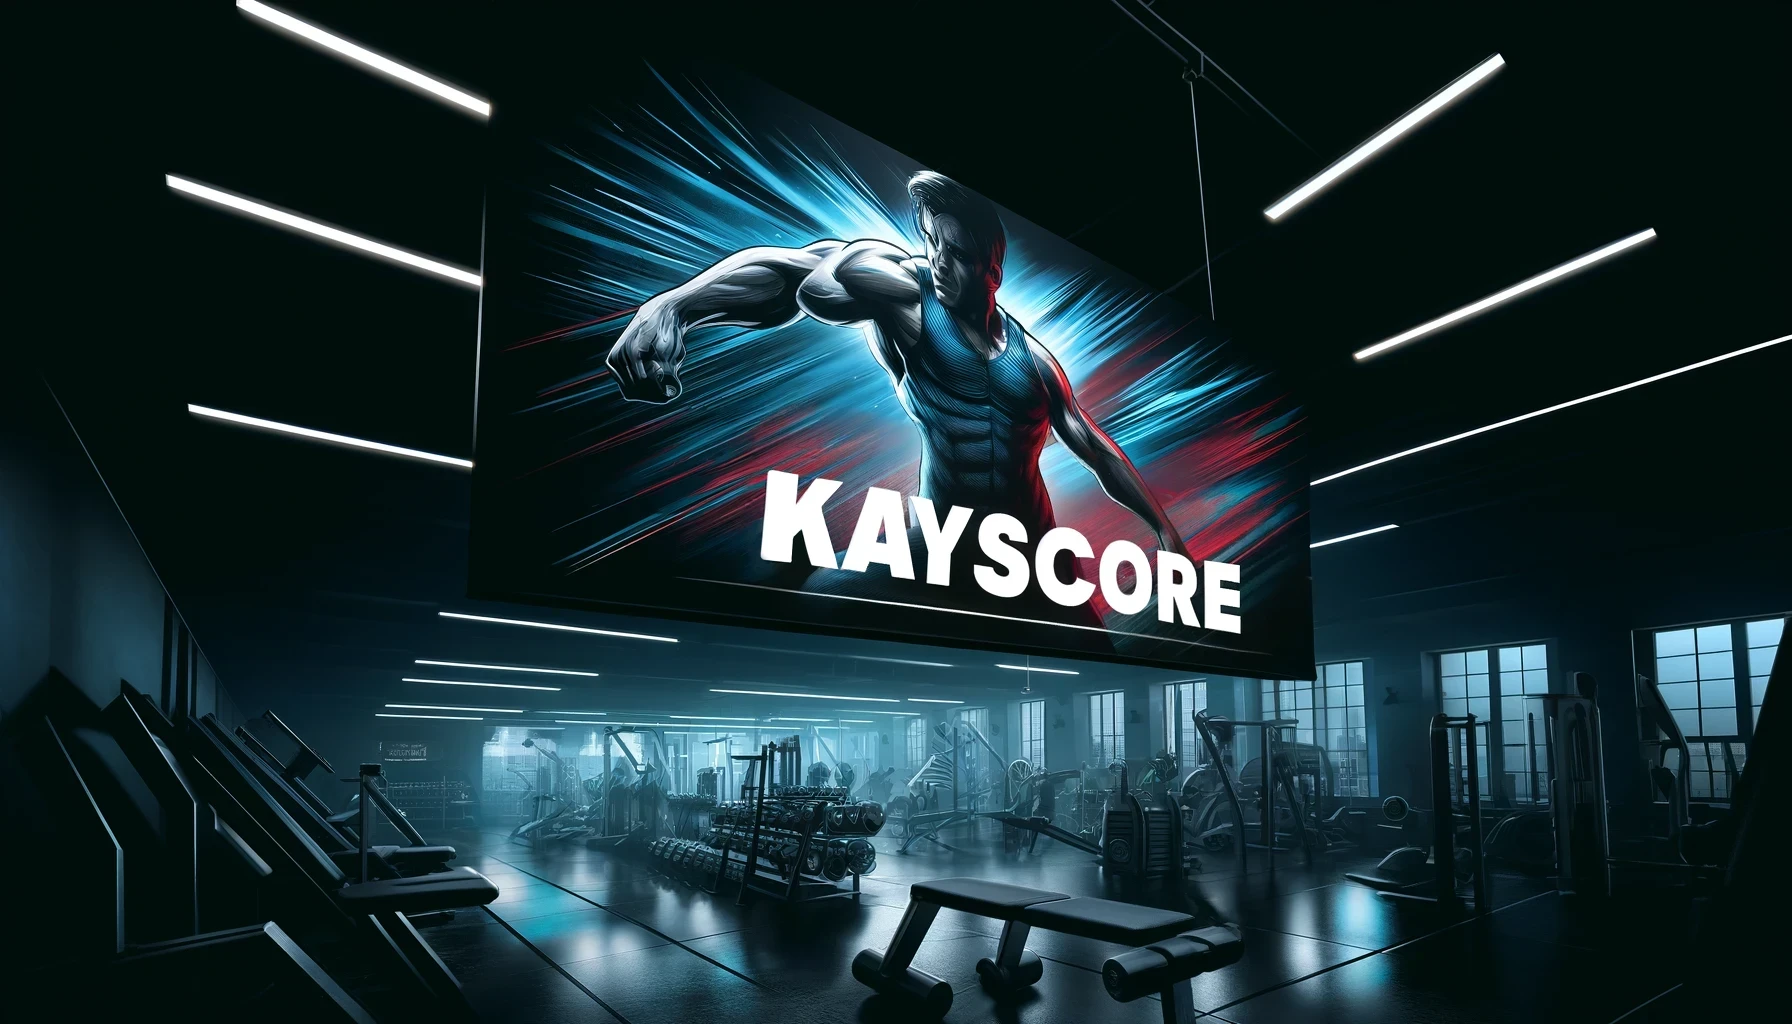 Gym Content von Kayscore auf Kaysblog